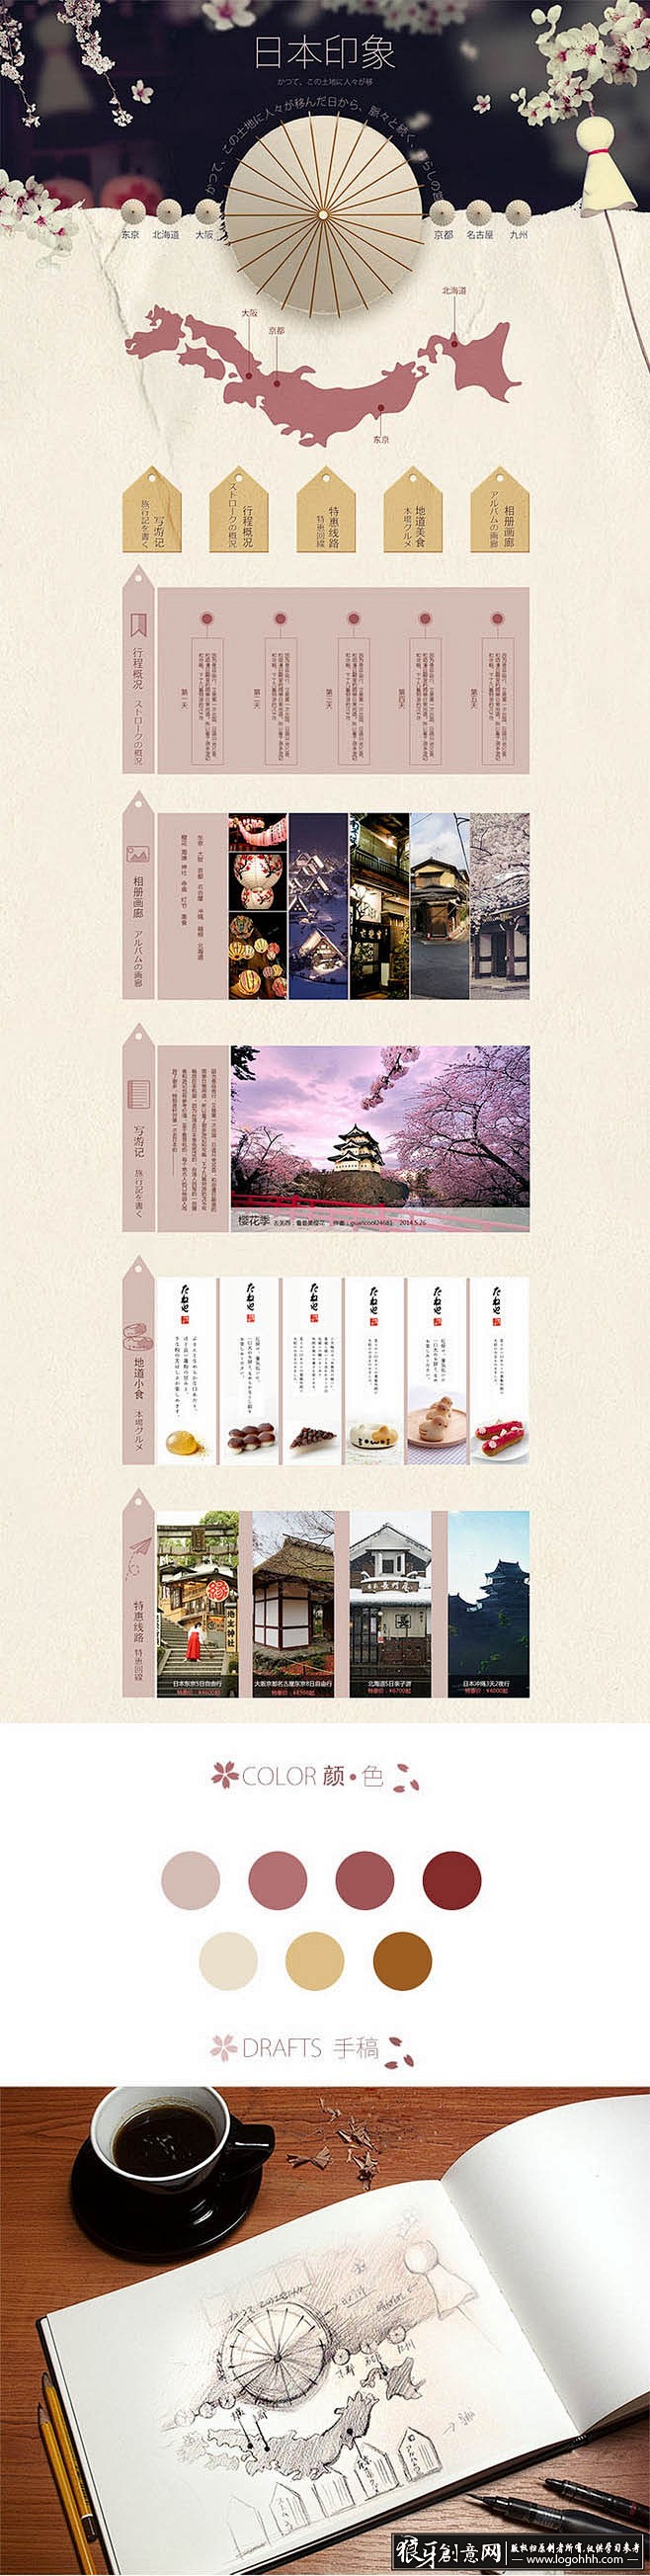 淘宝电商灵感 日本旅游网站设计 创意油纸...